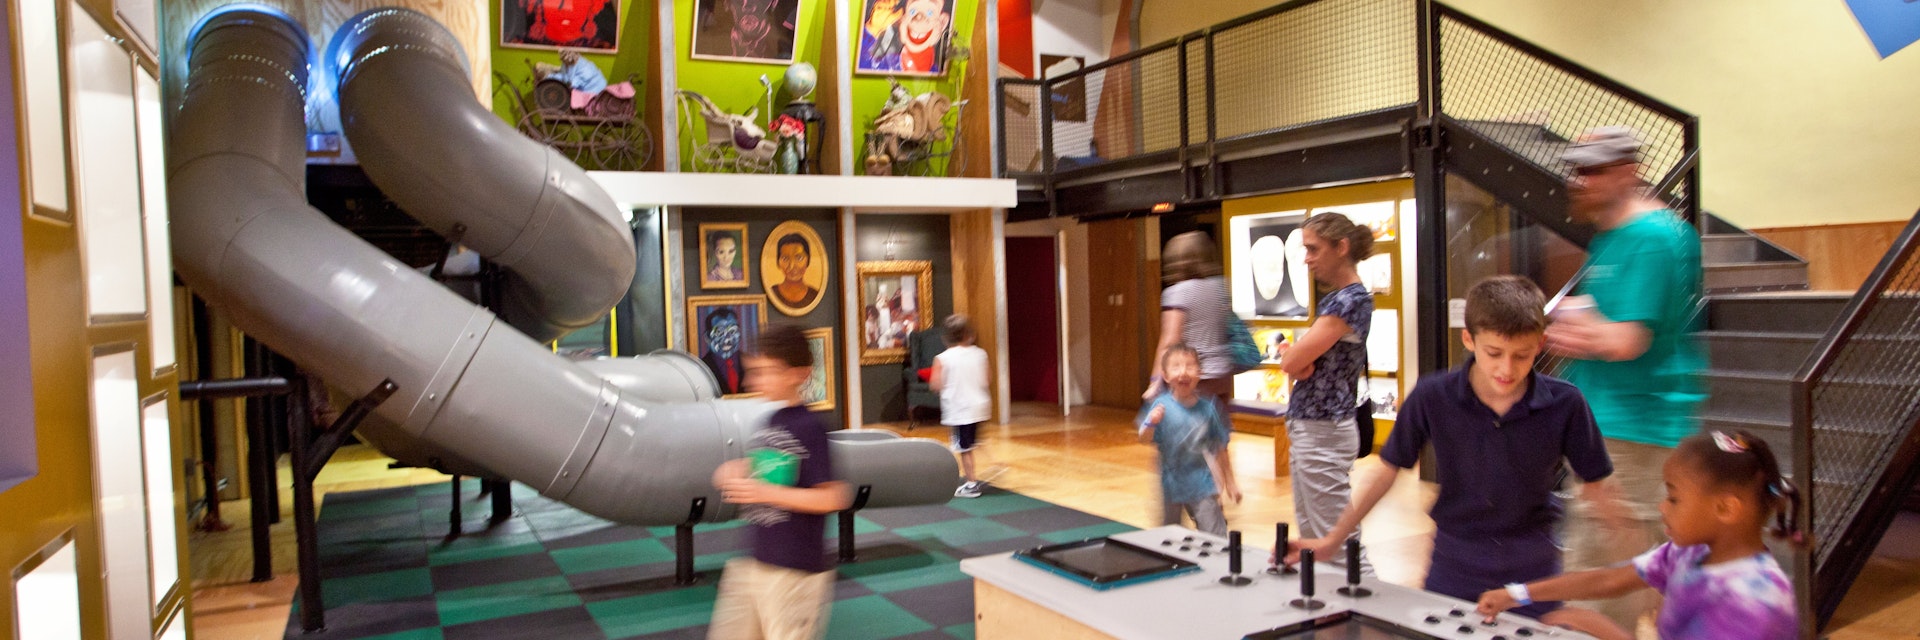 Children's Museum of Pittsburg